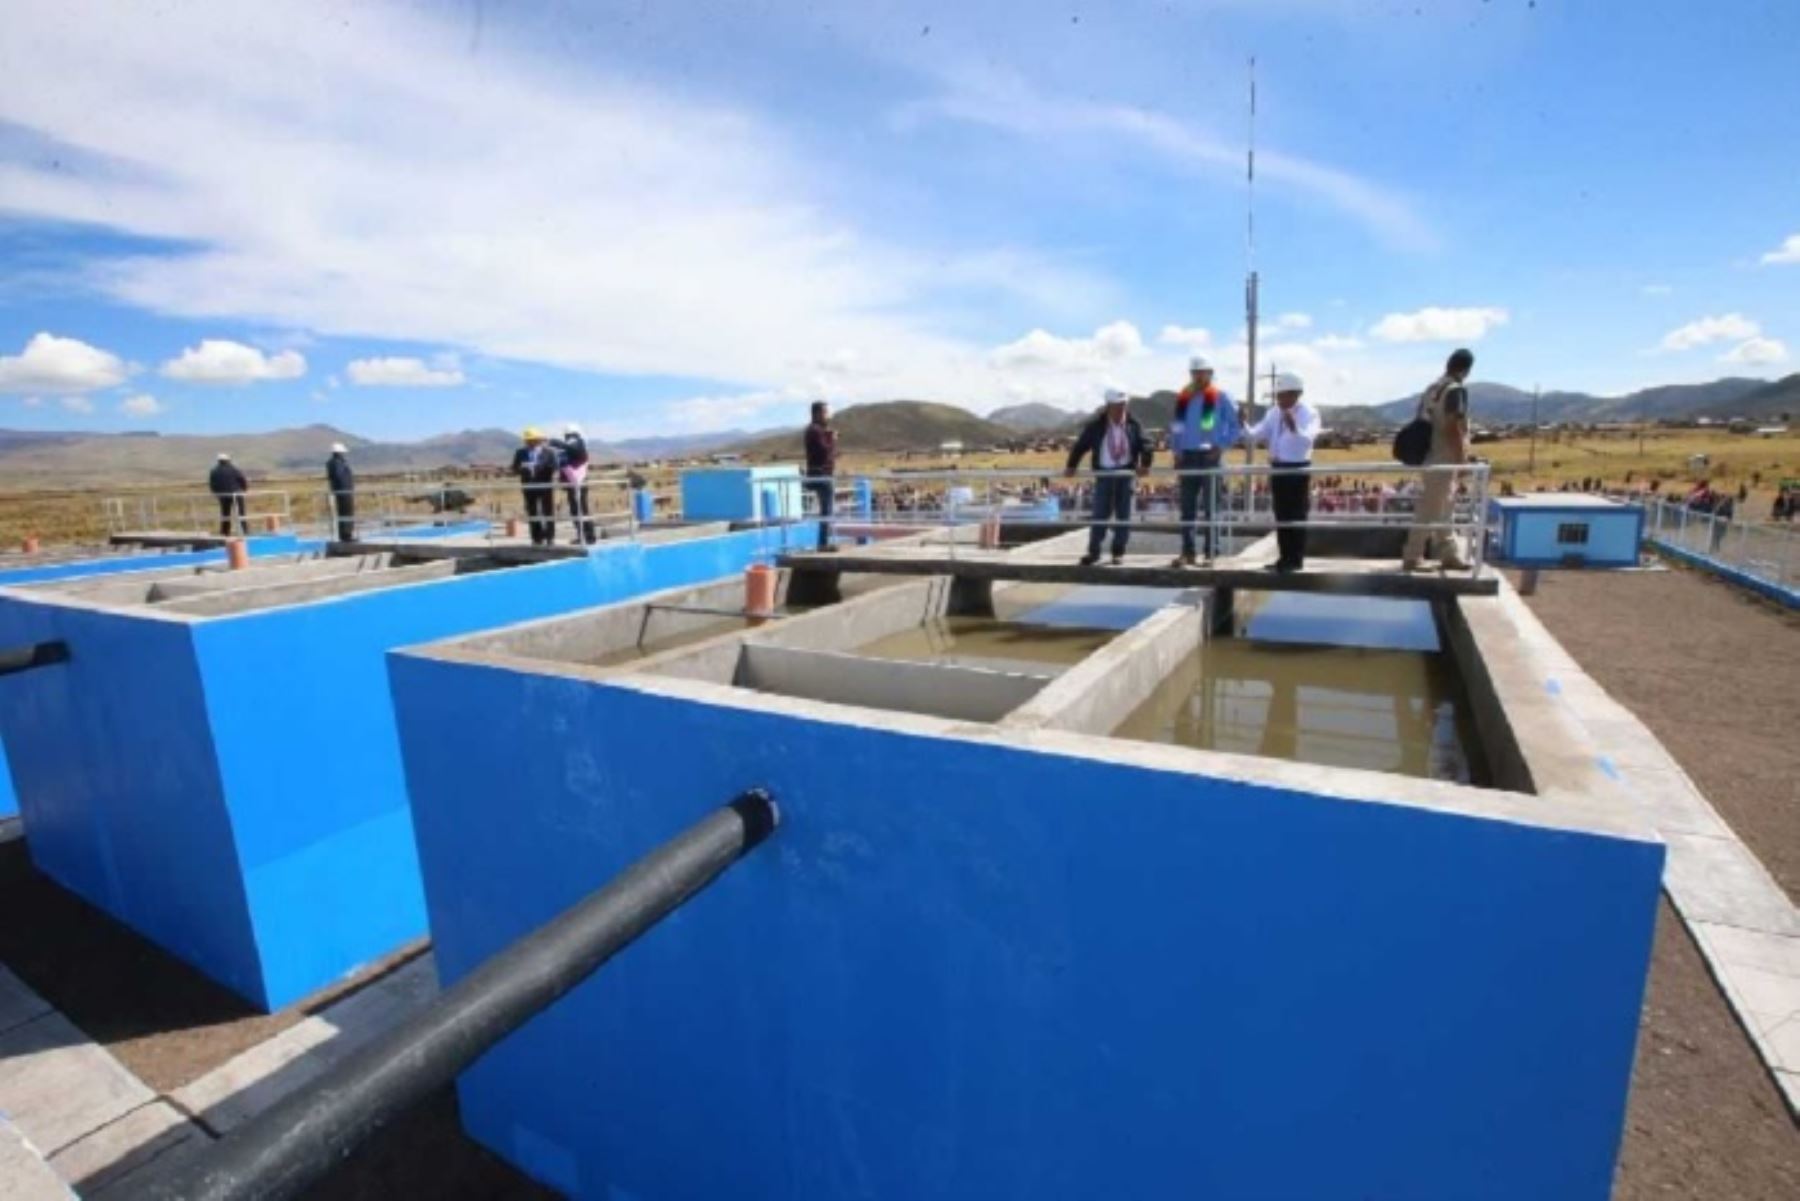 Un total de cuatro distritos de las provincias de San Román y de Puno, se beneficiarán con los trabajos de rehabilitación y optimización de la Planta de Tratamiento de Aguas Residuales (PTAR) La Chilla, porque permitirá reducir los efectos de la descarga de aguas residuales de dicha PTA que afecta la cuenca baja del río Coata.